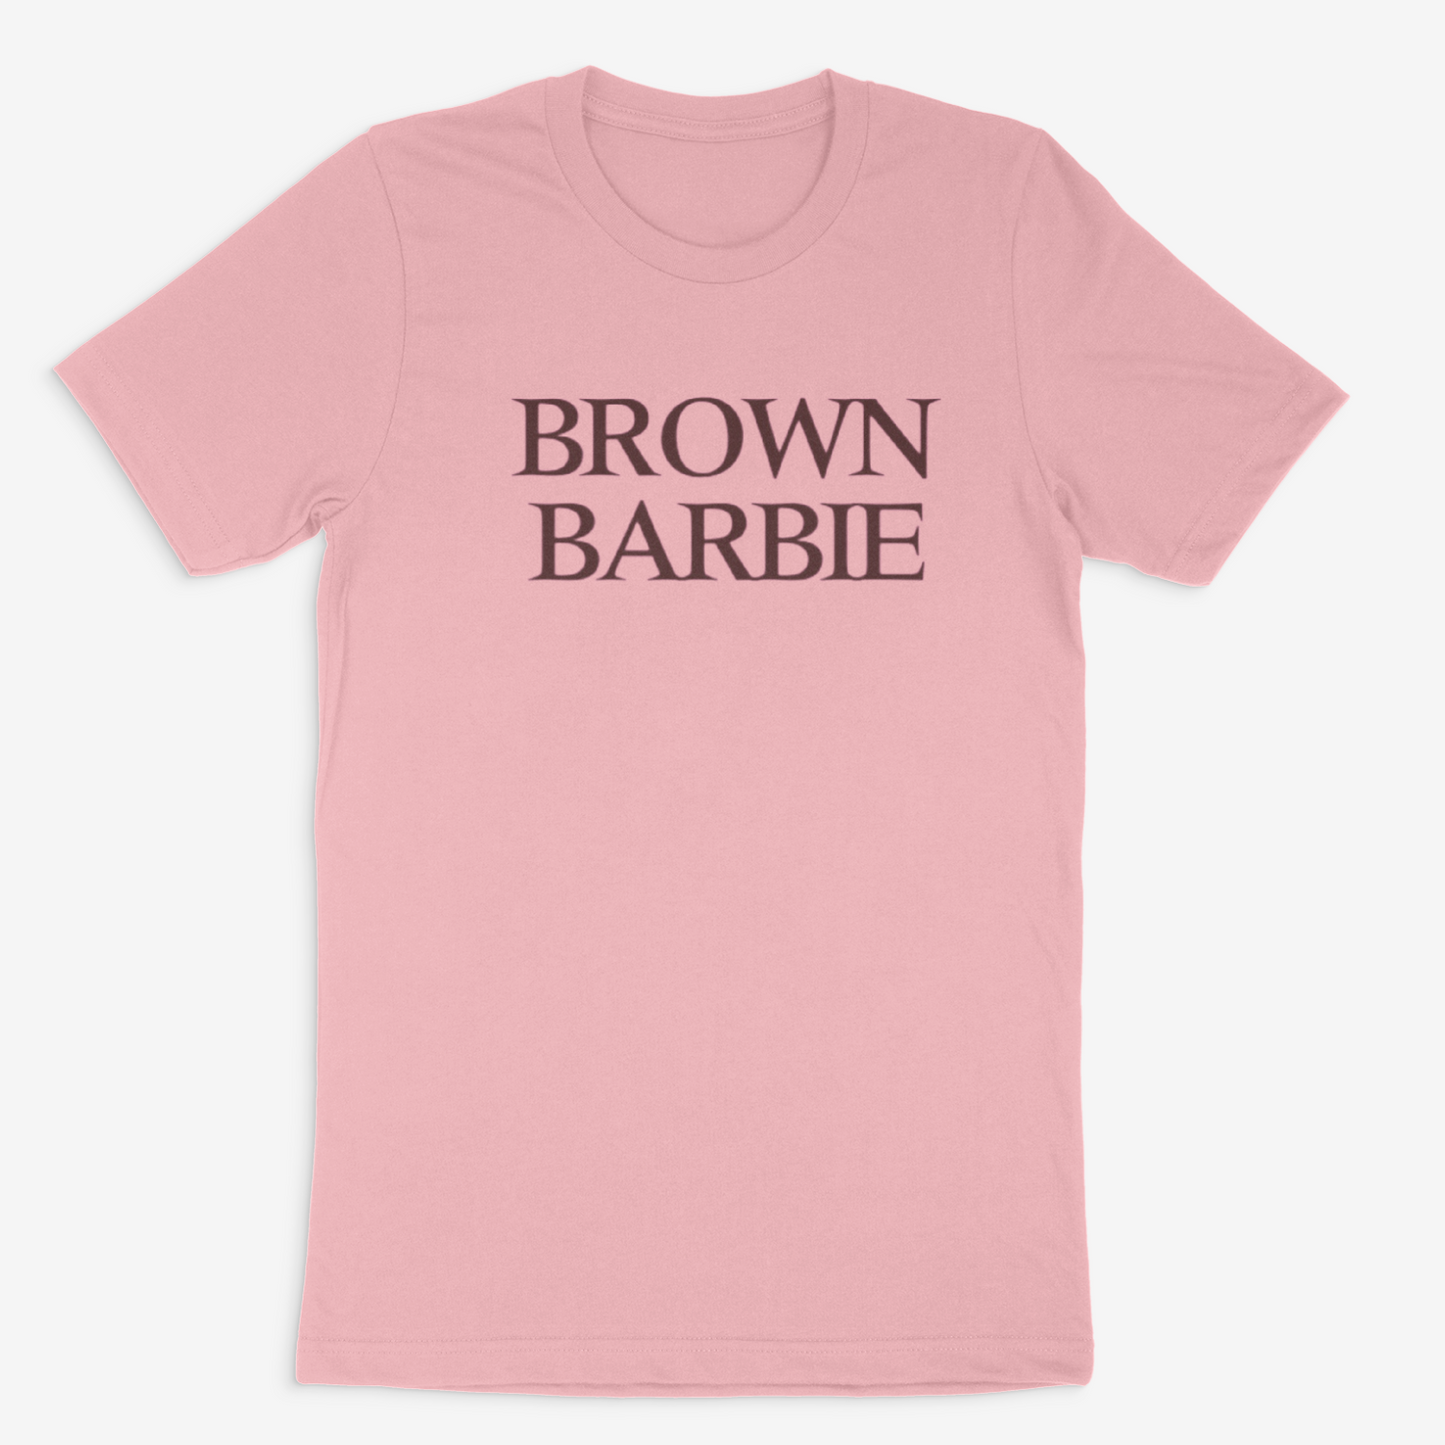 Brown Barbie Tee